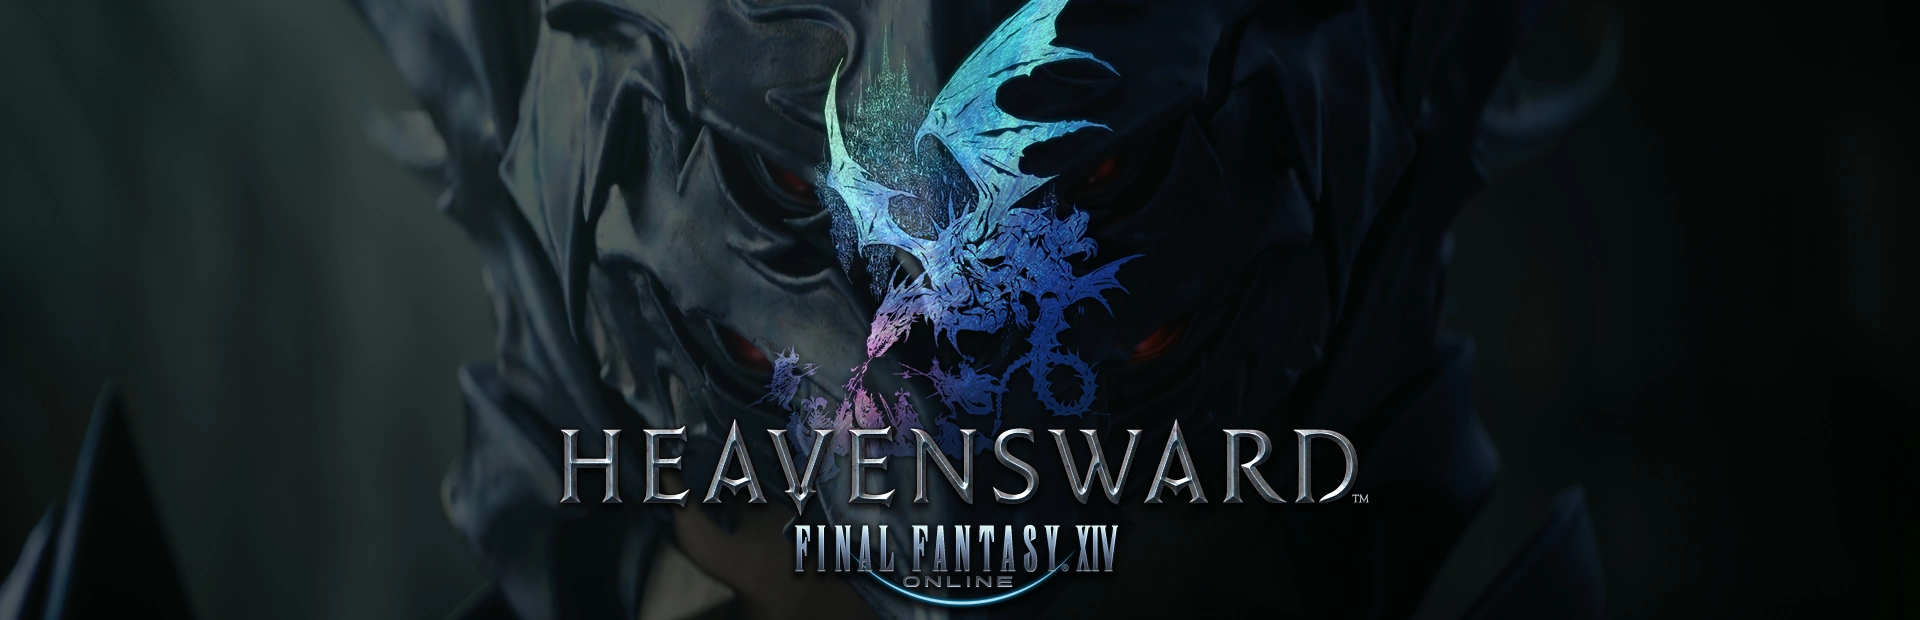 دانلود بازی Final Fantasy XIV: Heavensward برای PC | گیمباتو